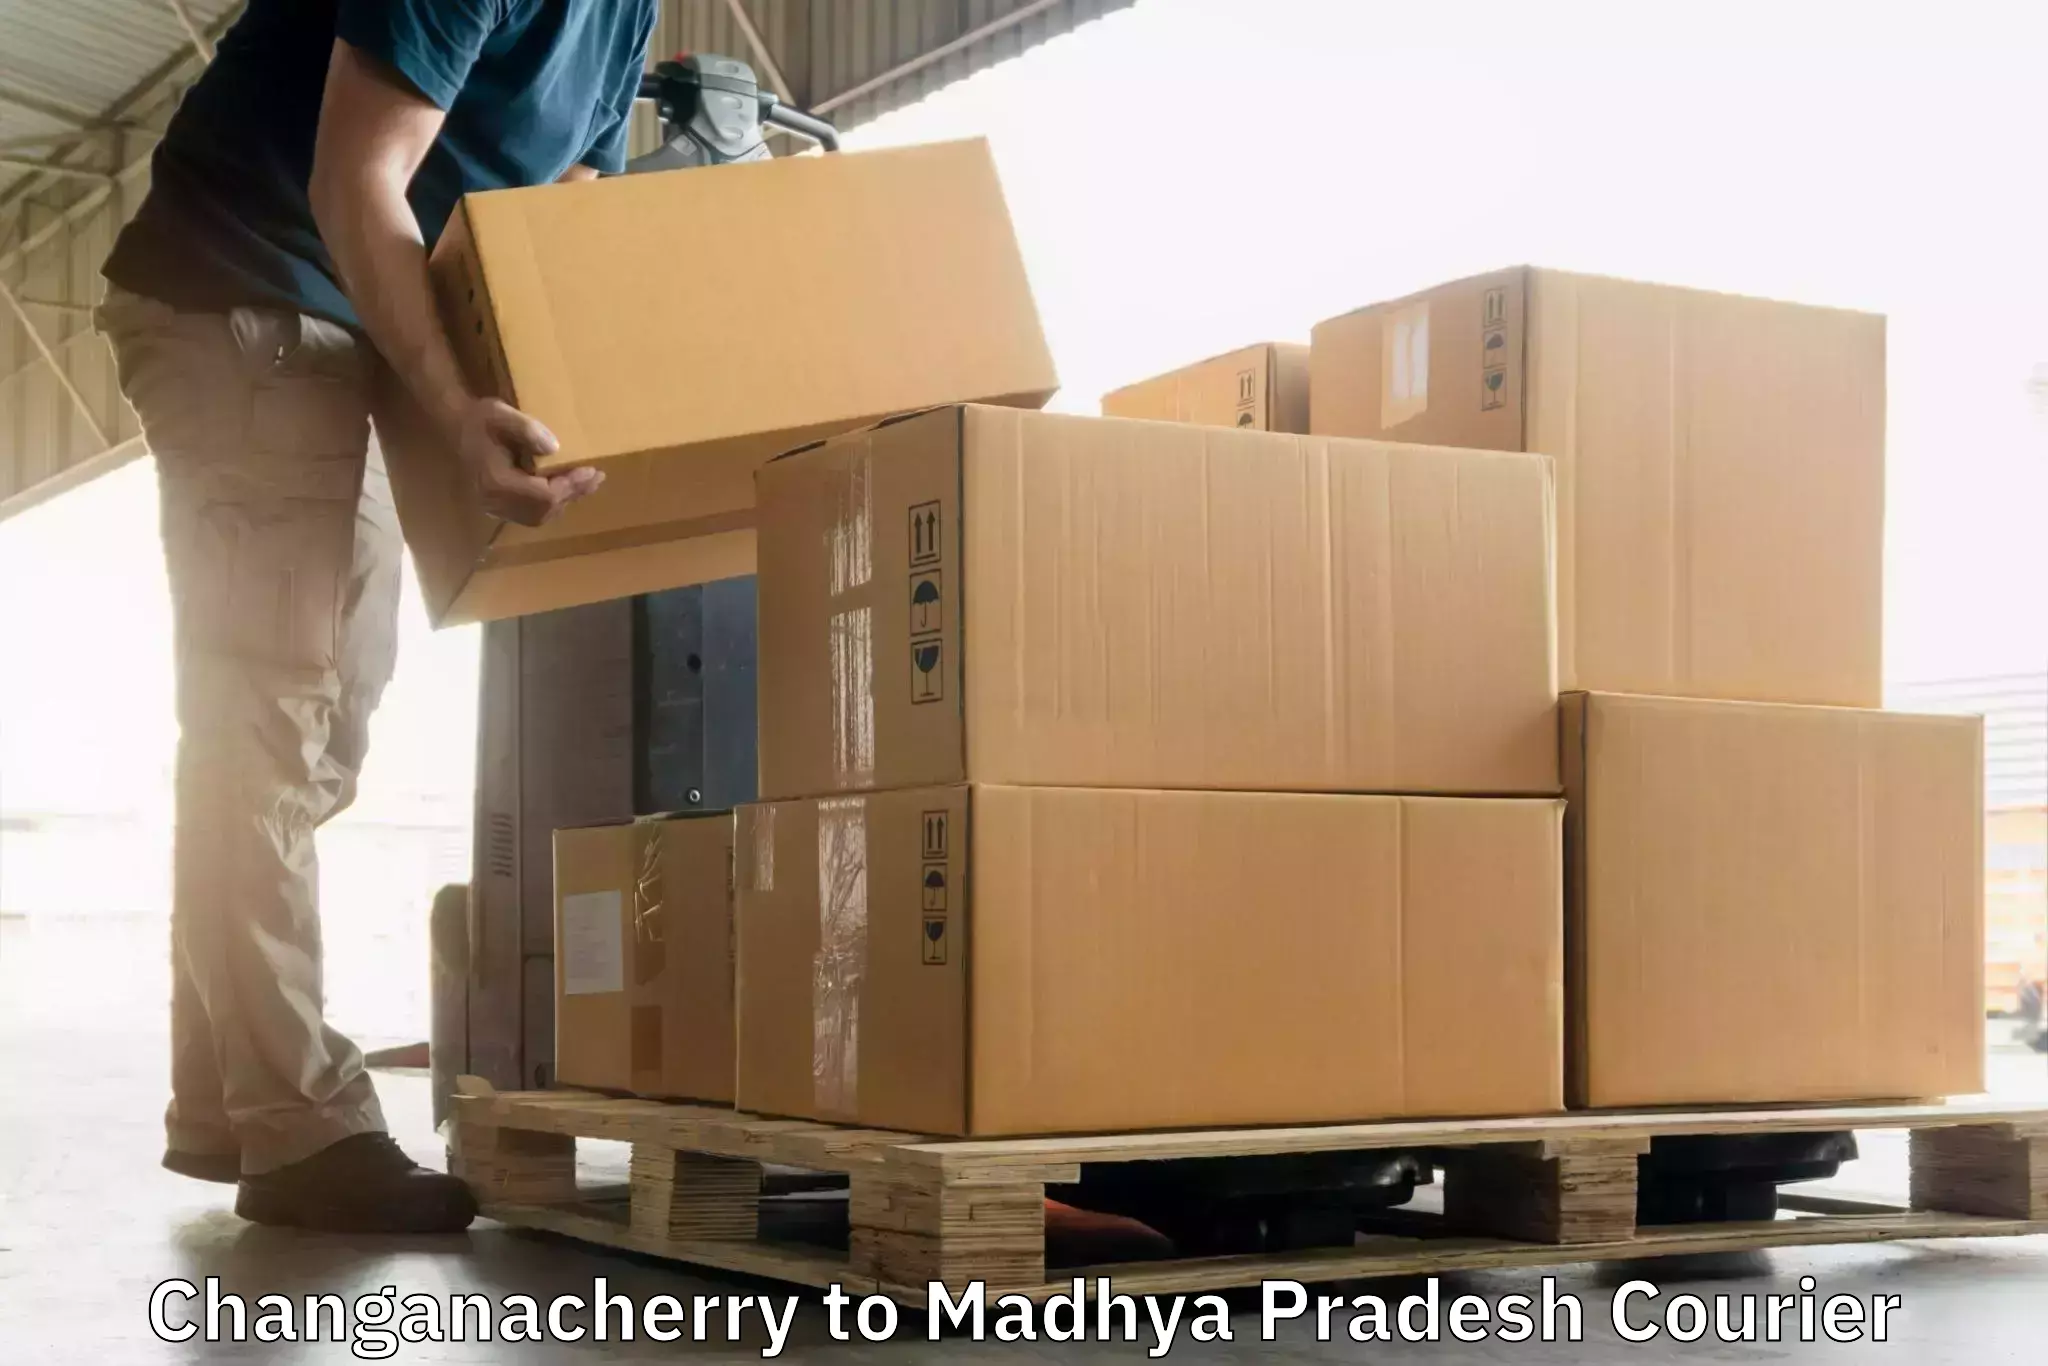 On-demand delivery in Changanacherry to Dewas